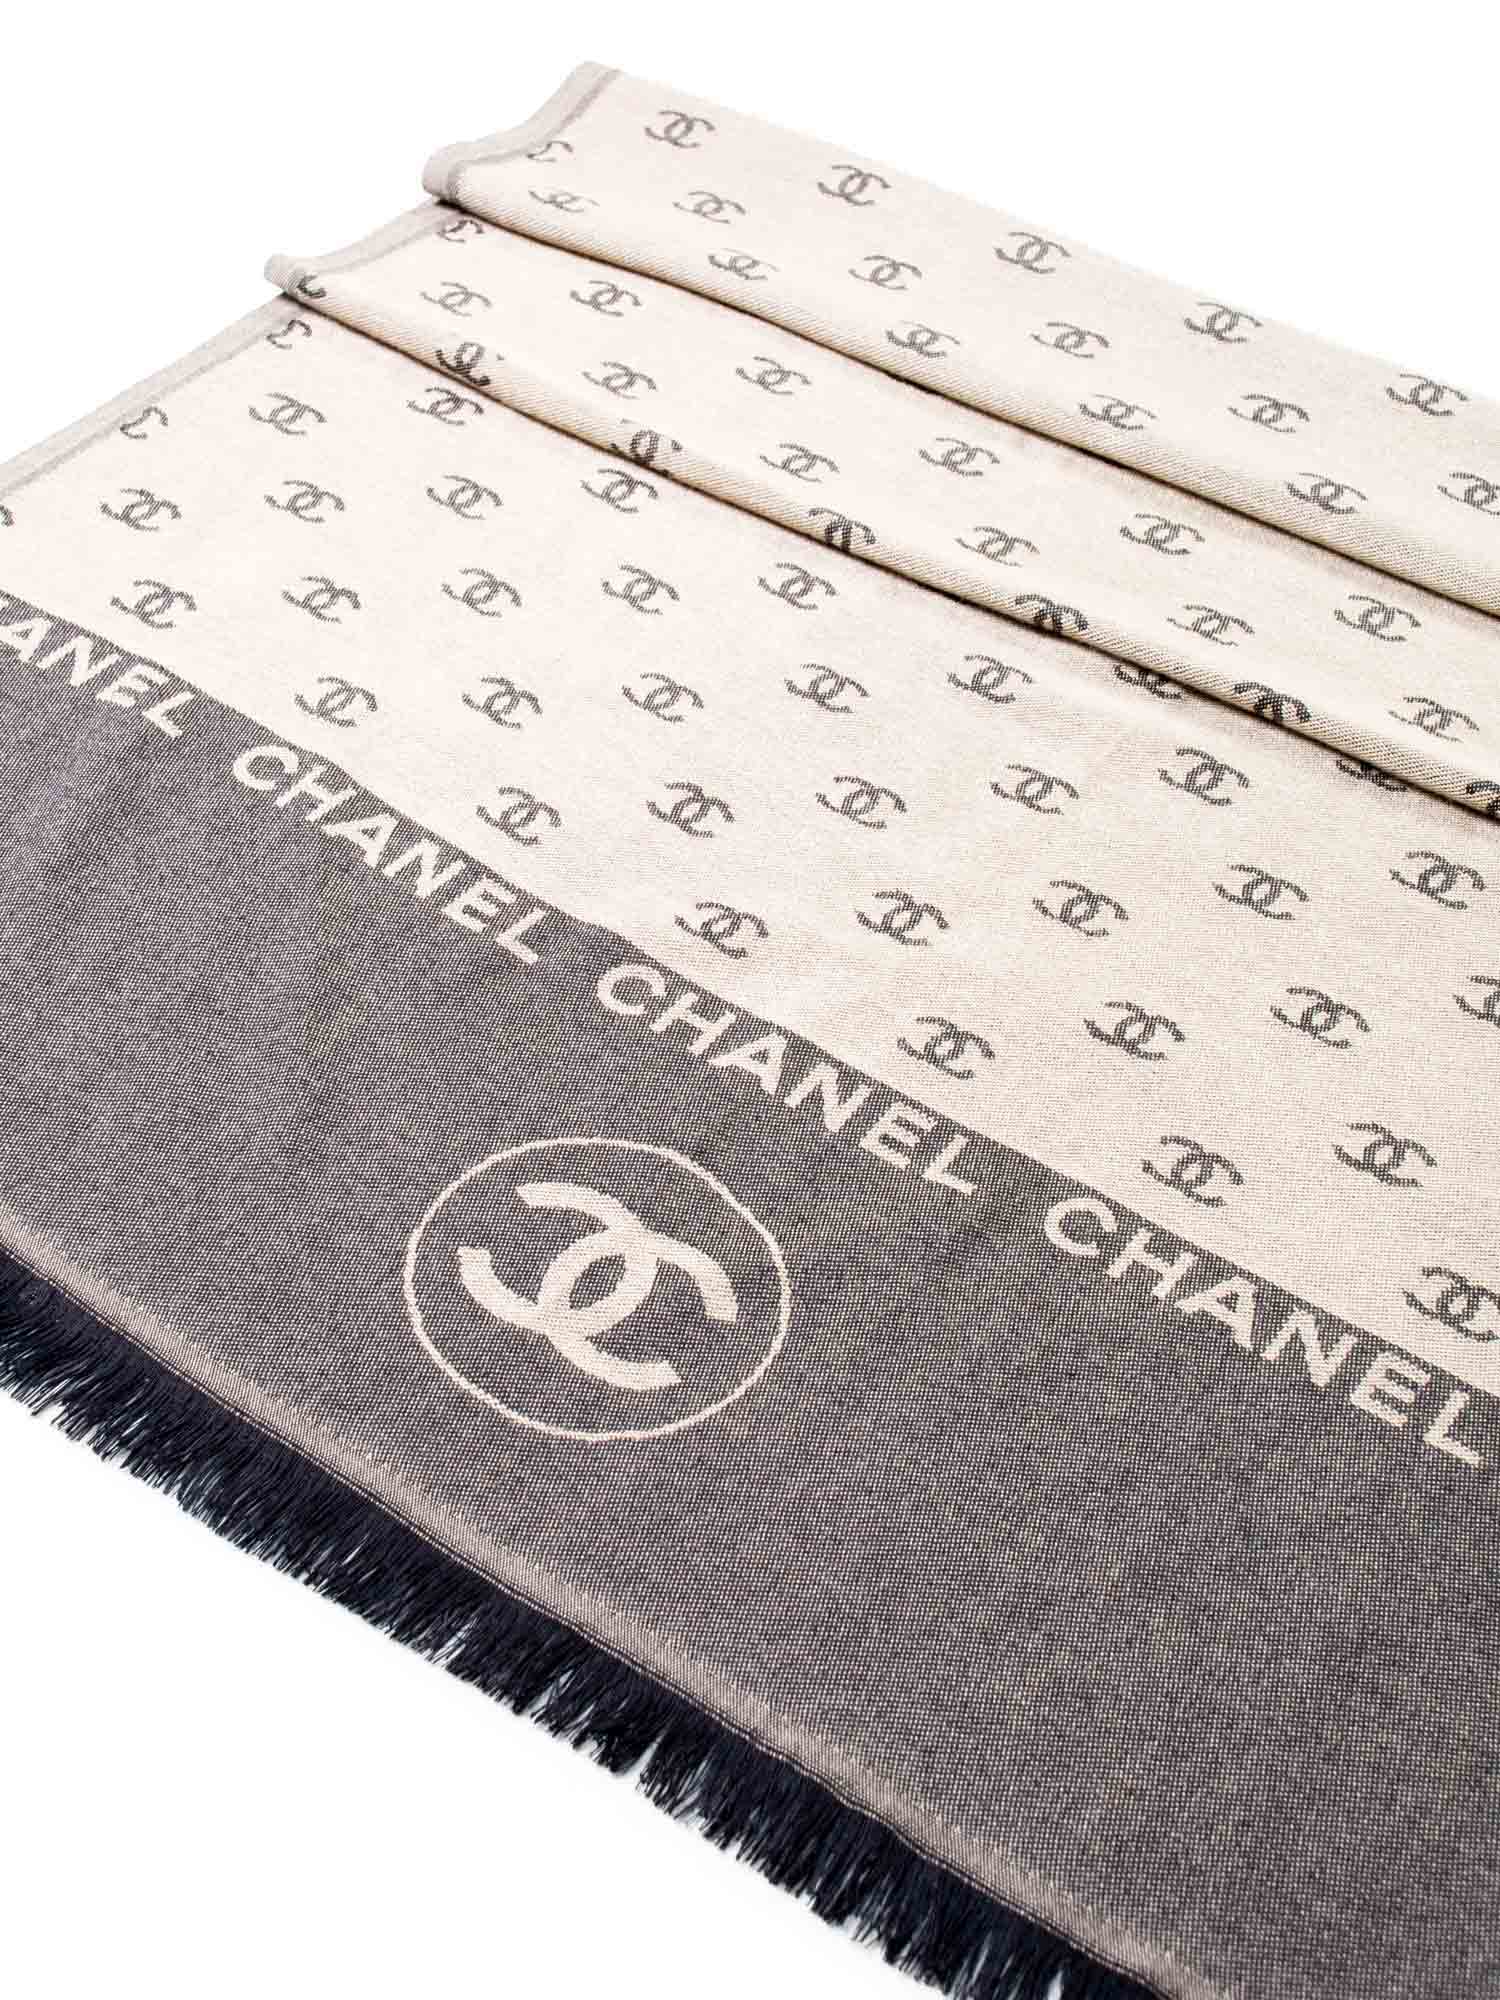 CHANEL Cashmere CC Logo Fringe Shawl Brown-designer resale